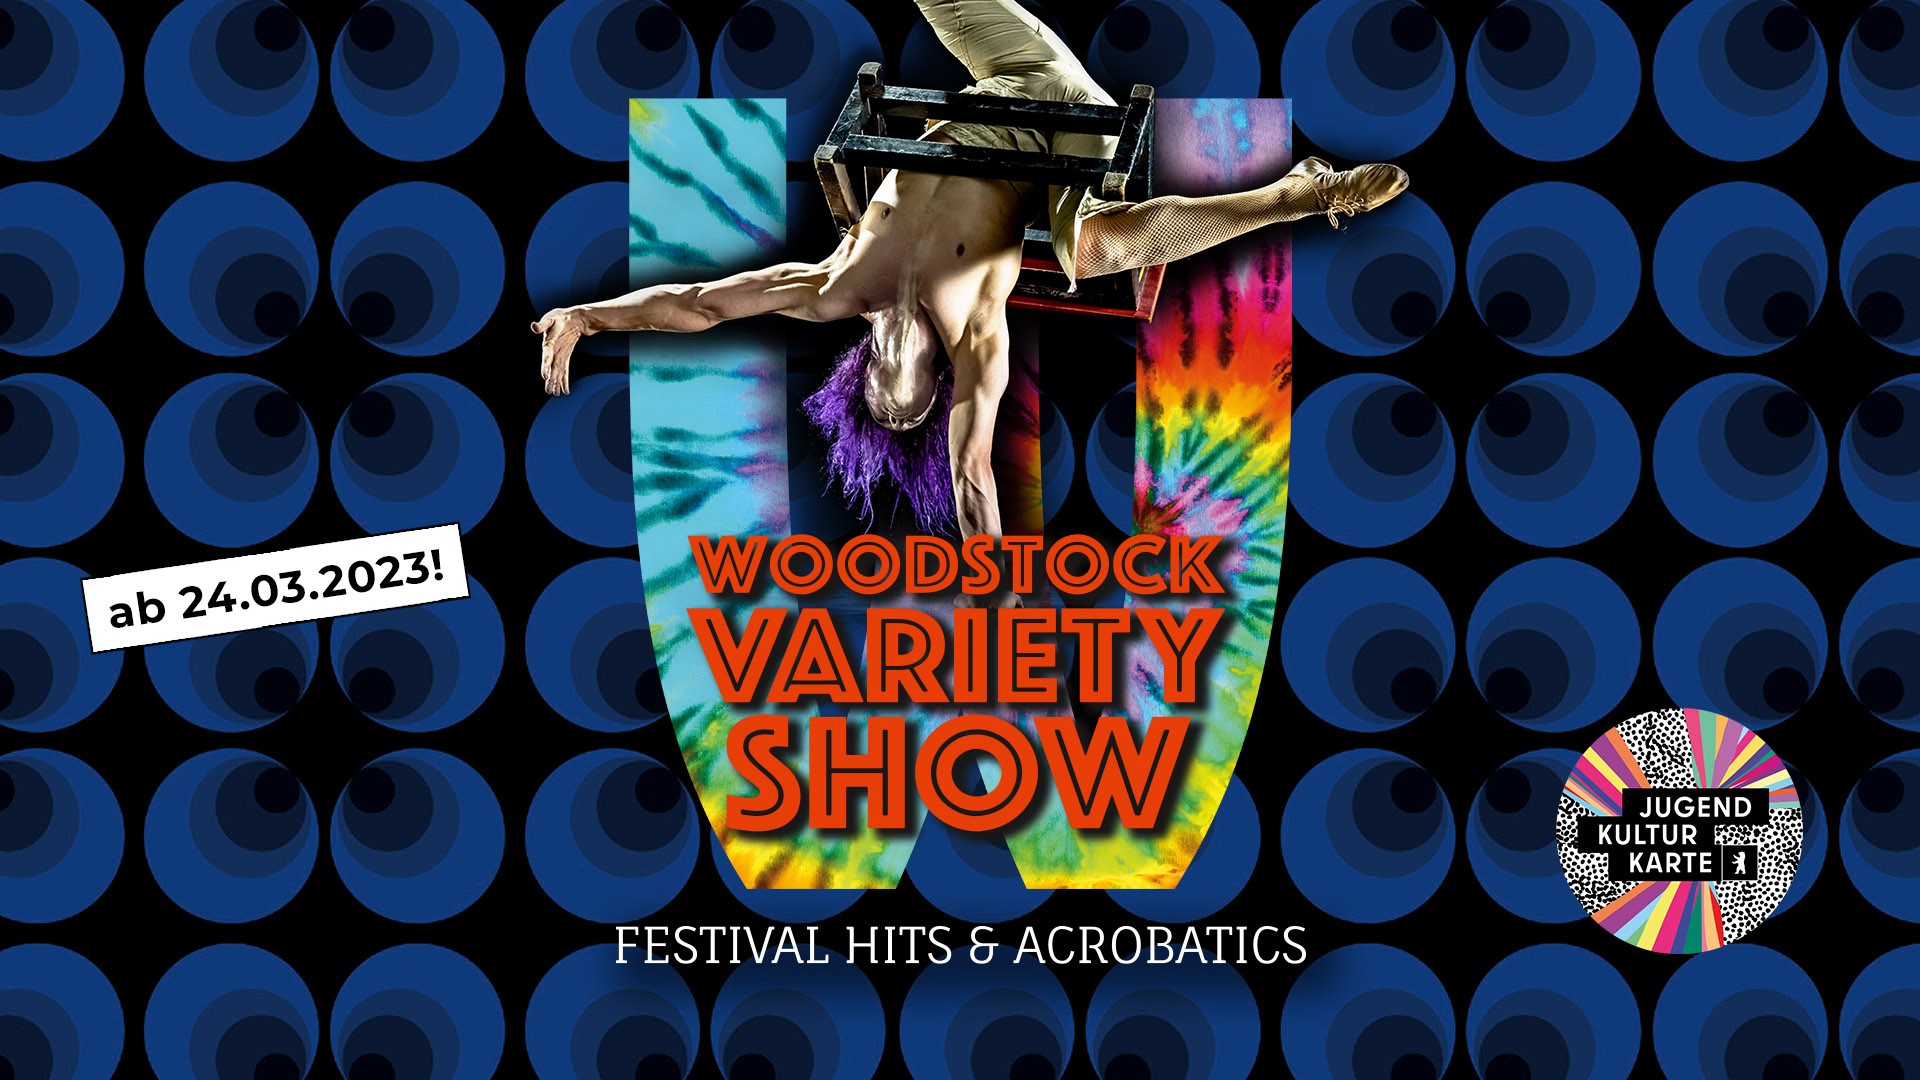 Woodstock Variety Show Wintergarten Varieté Berlin 2023